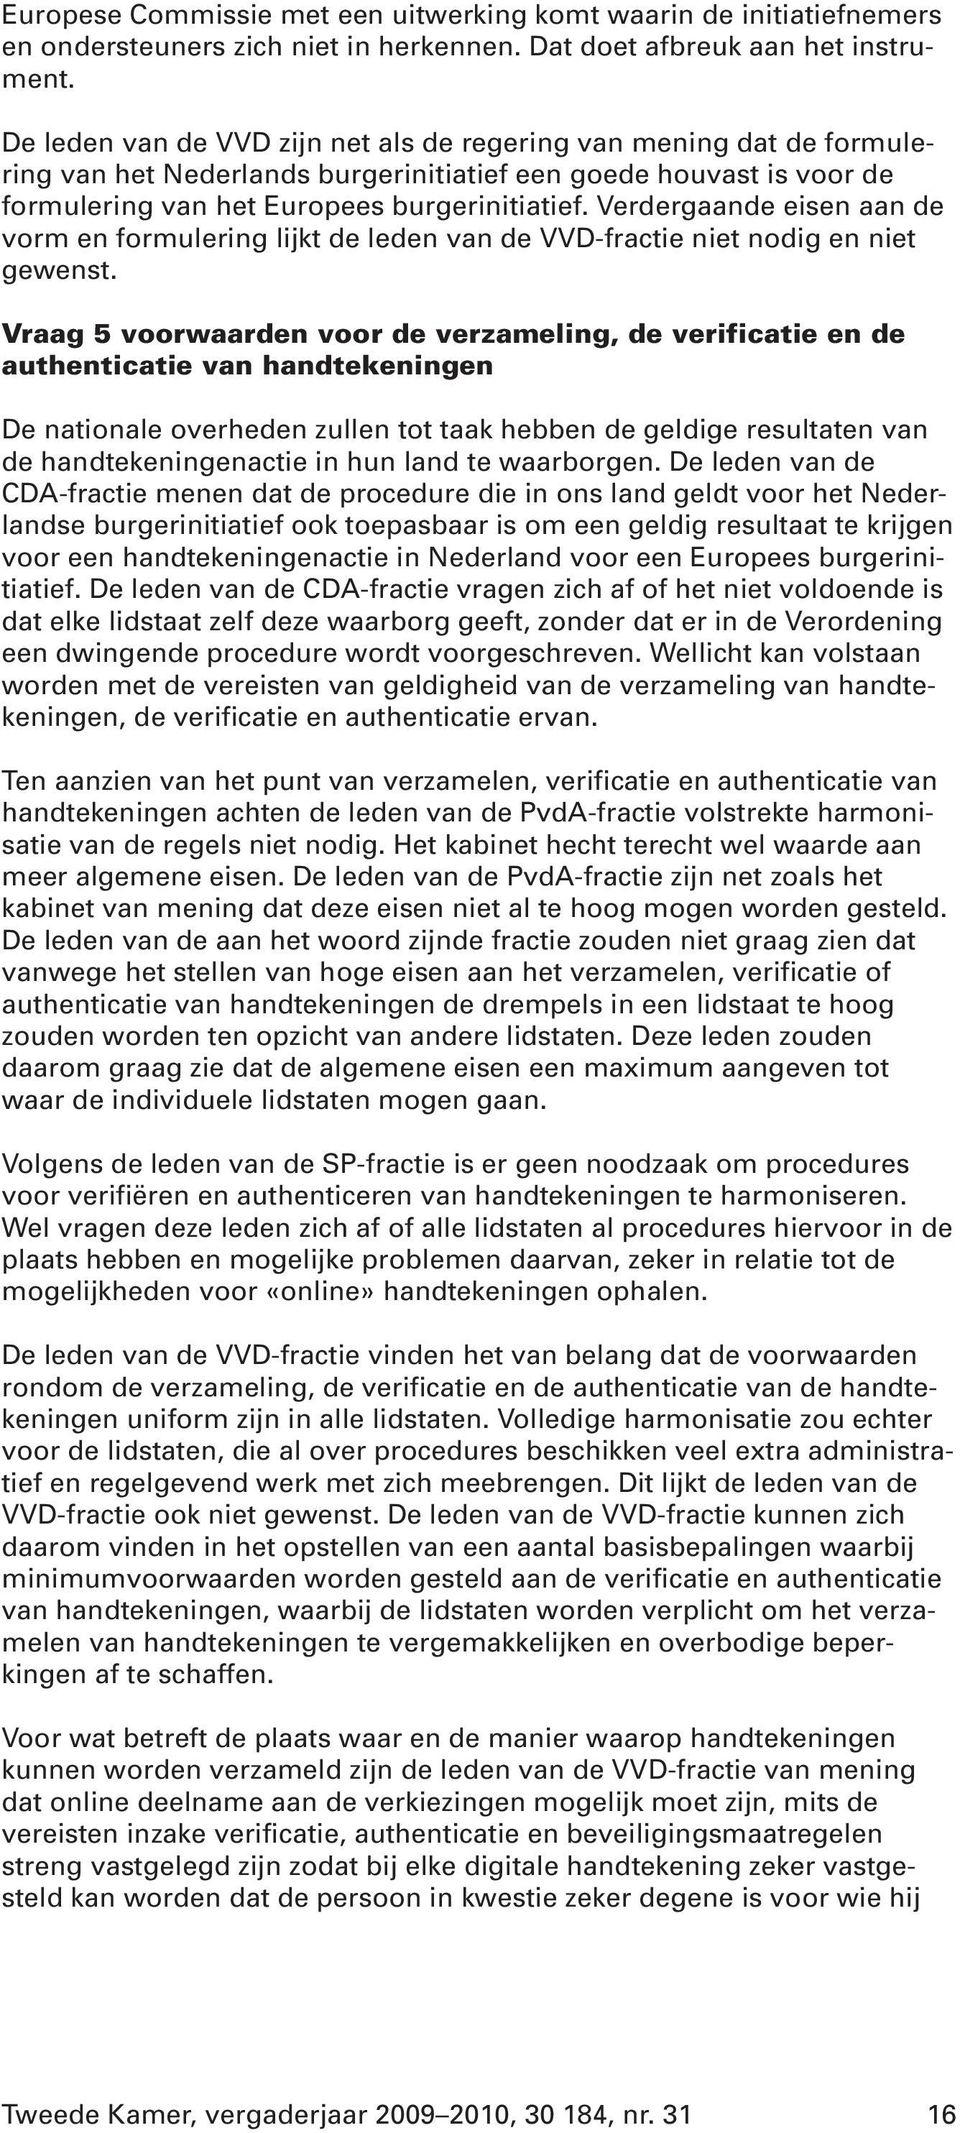 Verdergaande eisen aan de vorm en formulering lijkt de leden van de VVD-fractie niet nodig en niet gewenst.